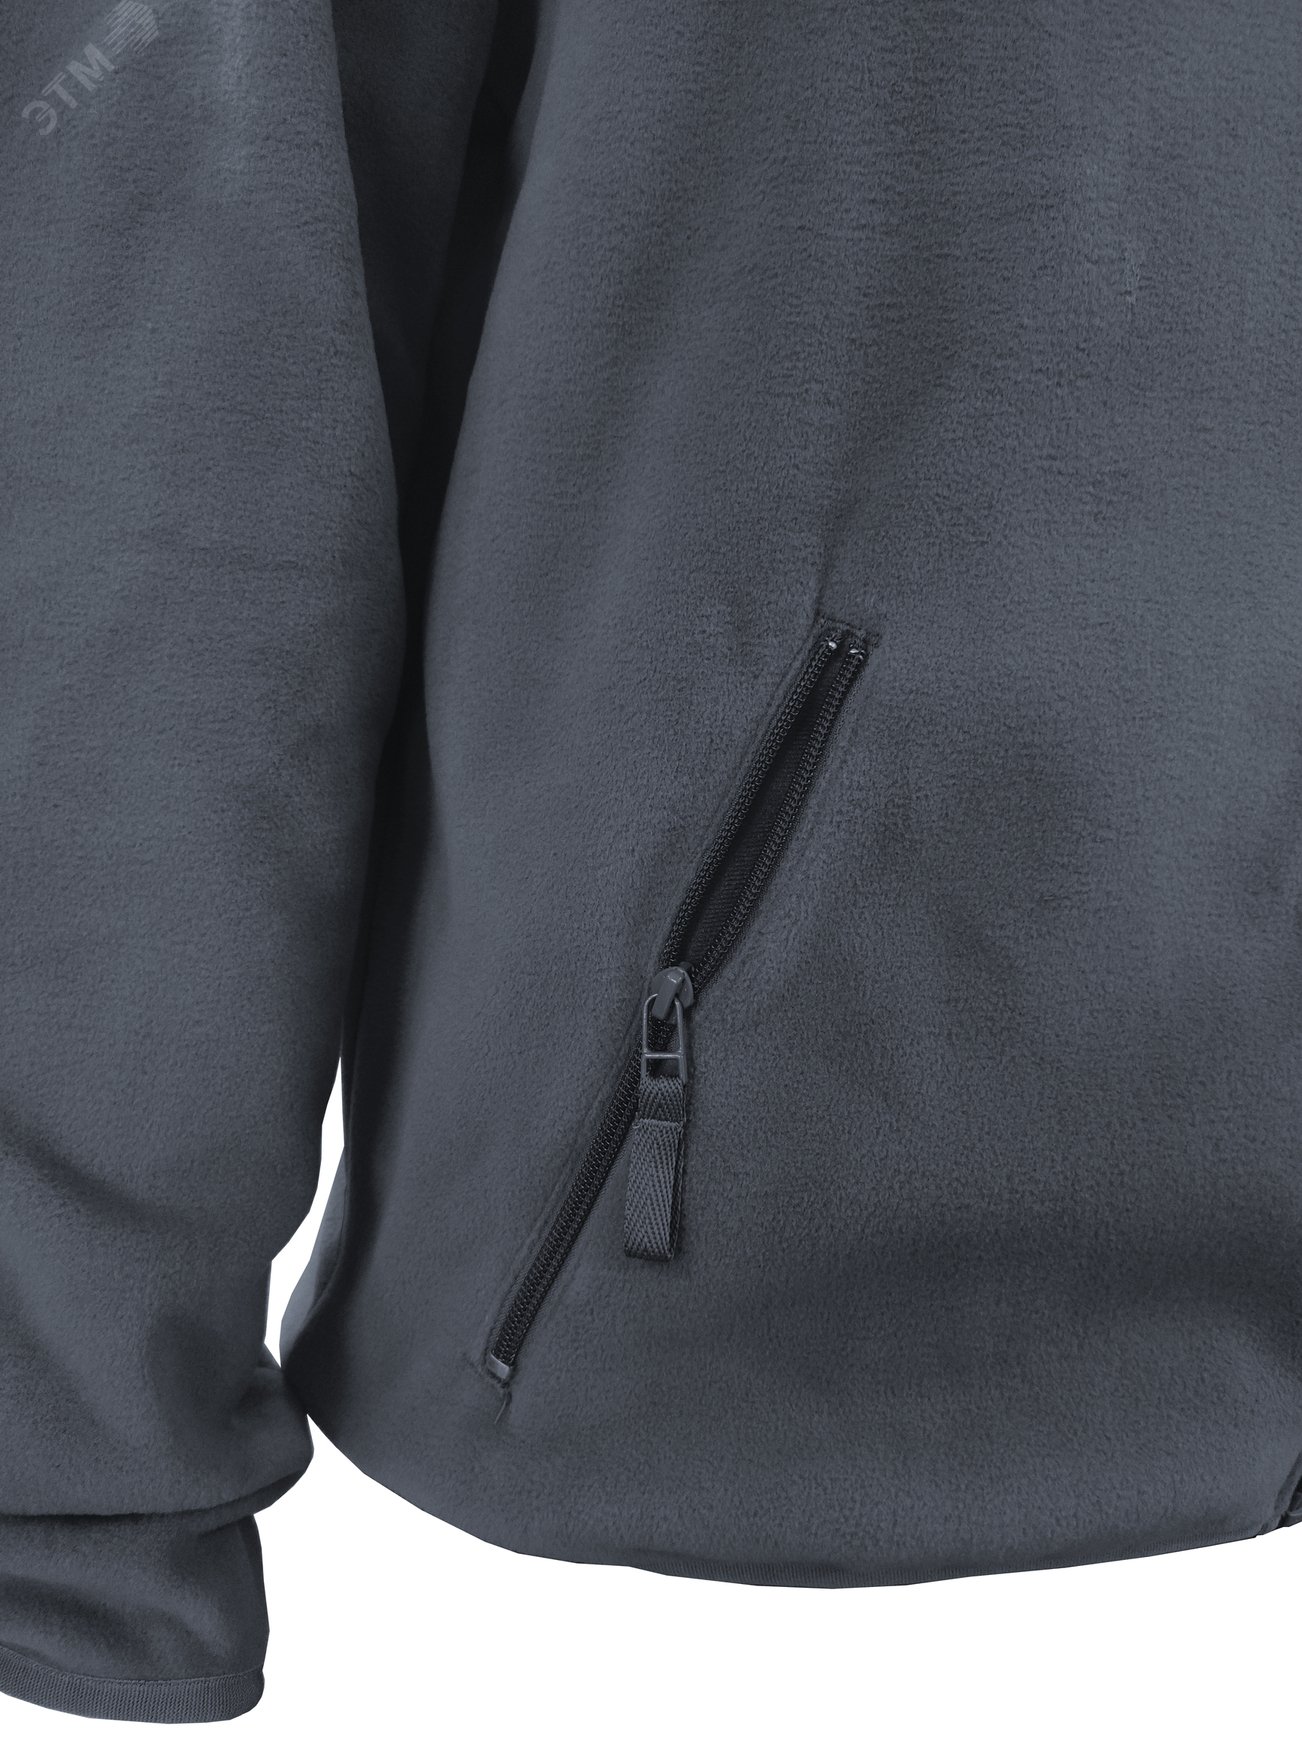 Куртка флисовая арт. JF-01 на молнии цв. серый 56-58 р. ХL 142302 Эталон-Спецодежда - превью 8